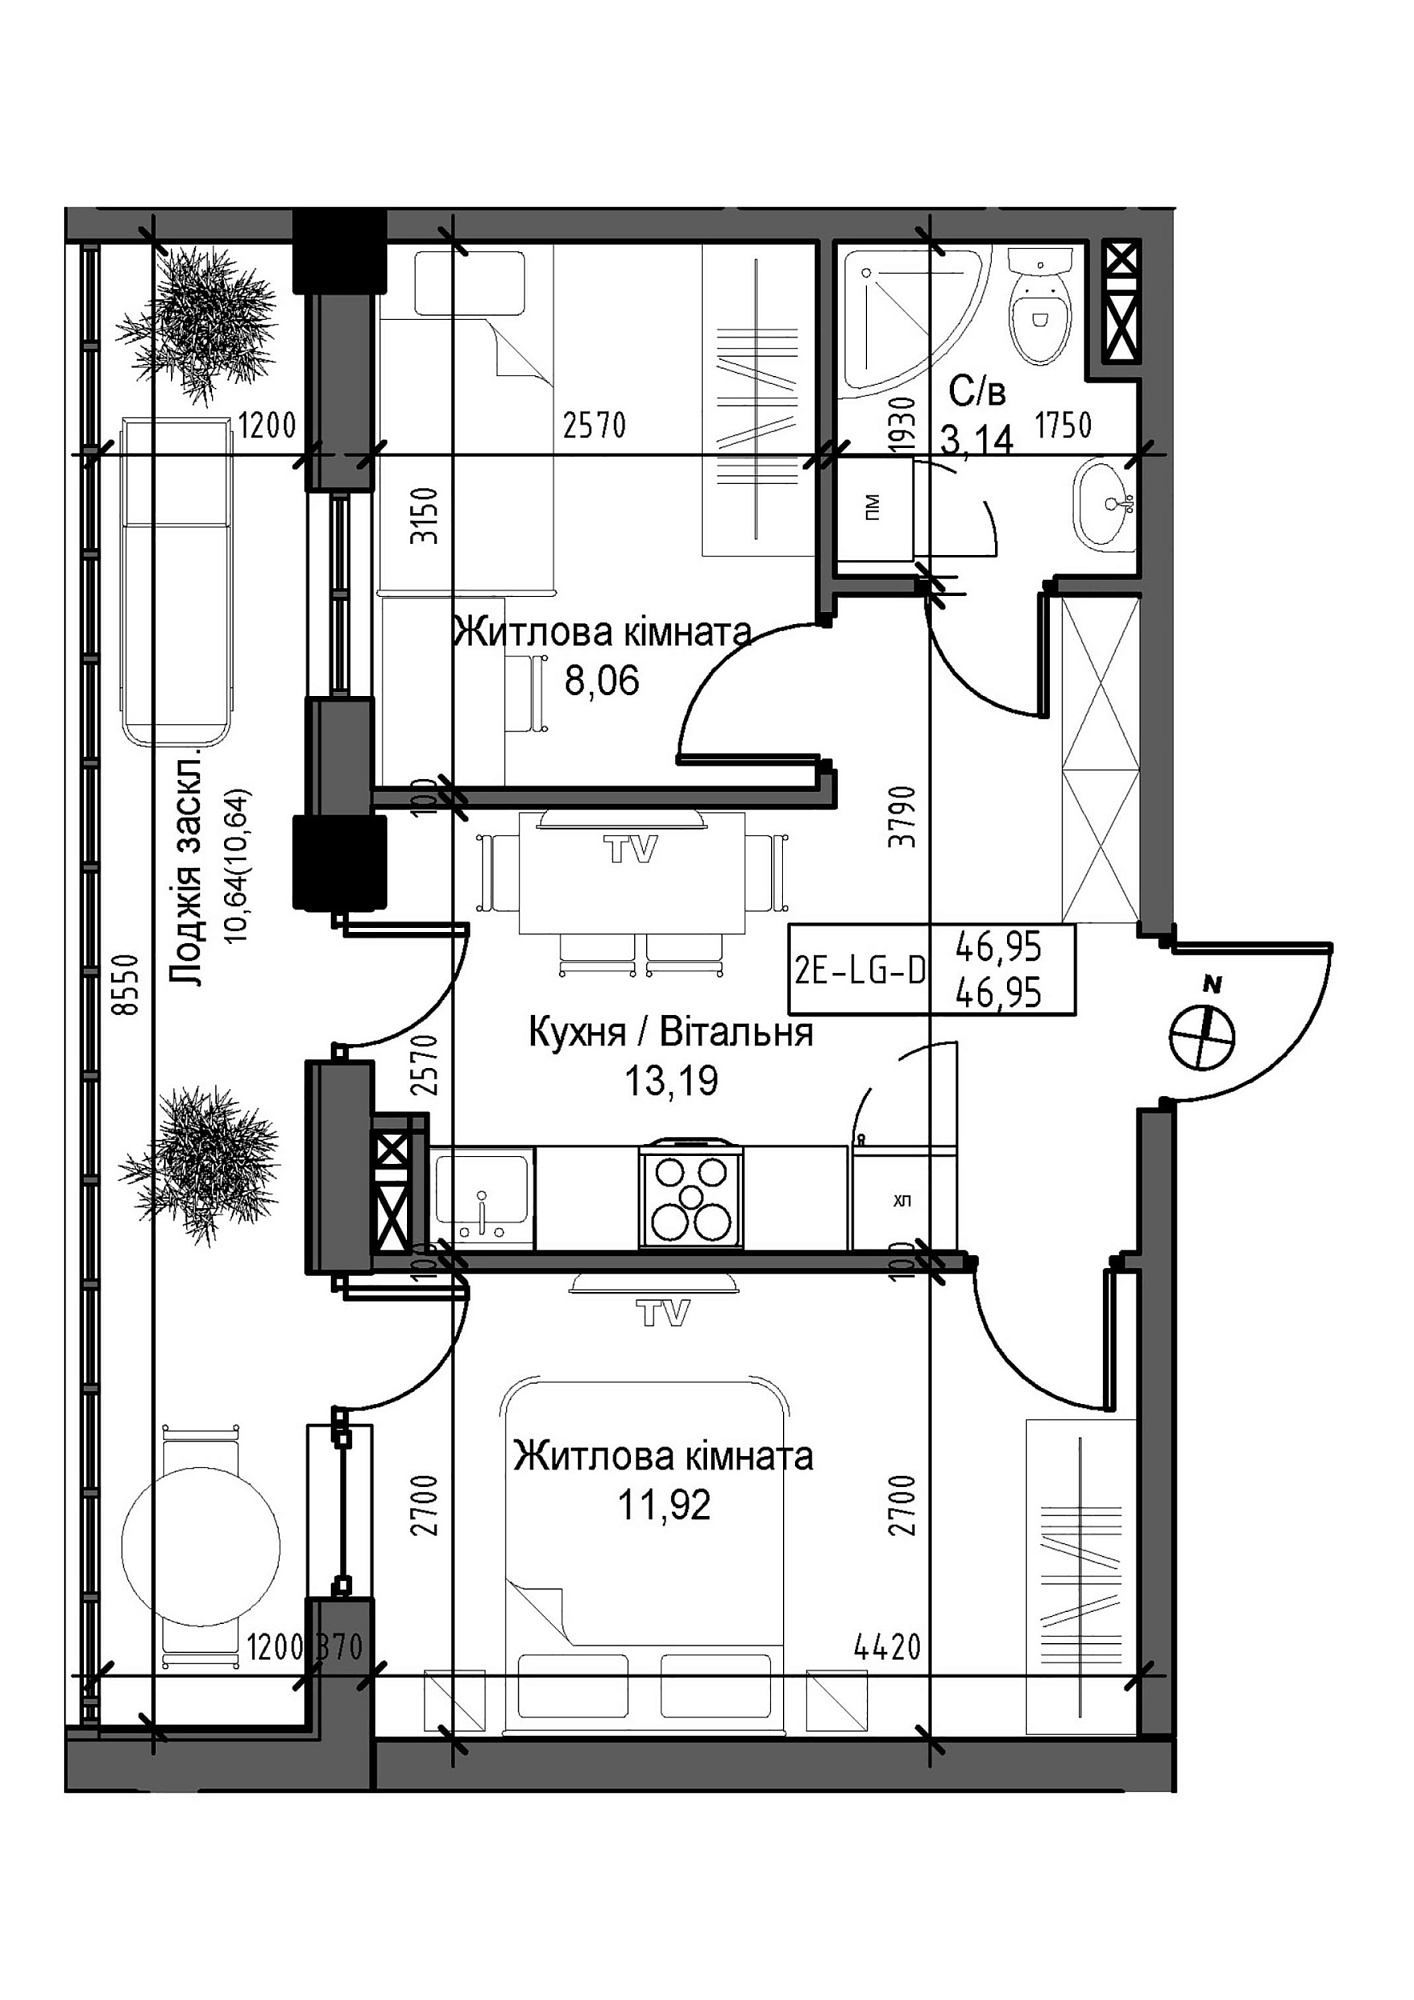 Планировка 2-к квартира площей 46.95м2, UM-007-03/0001.